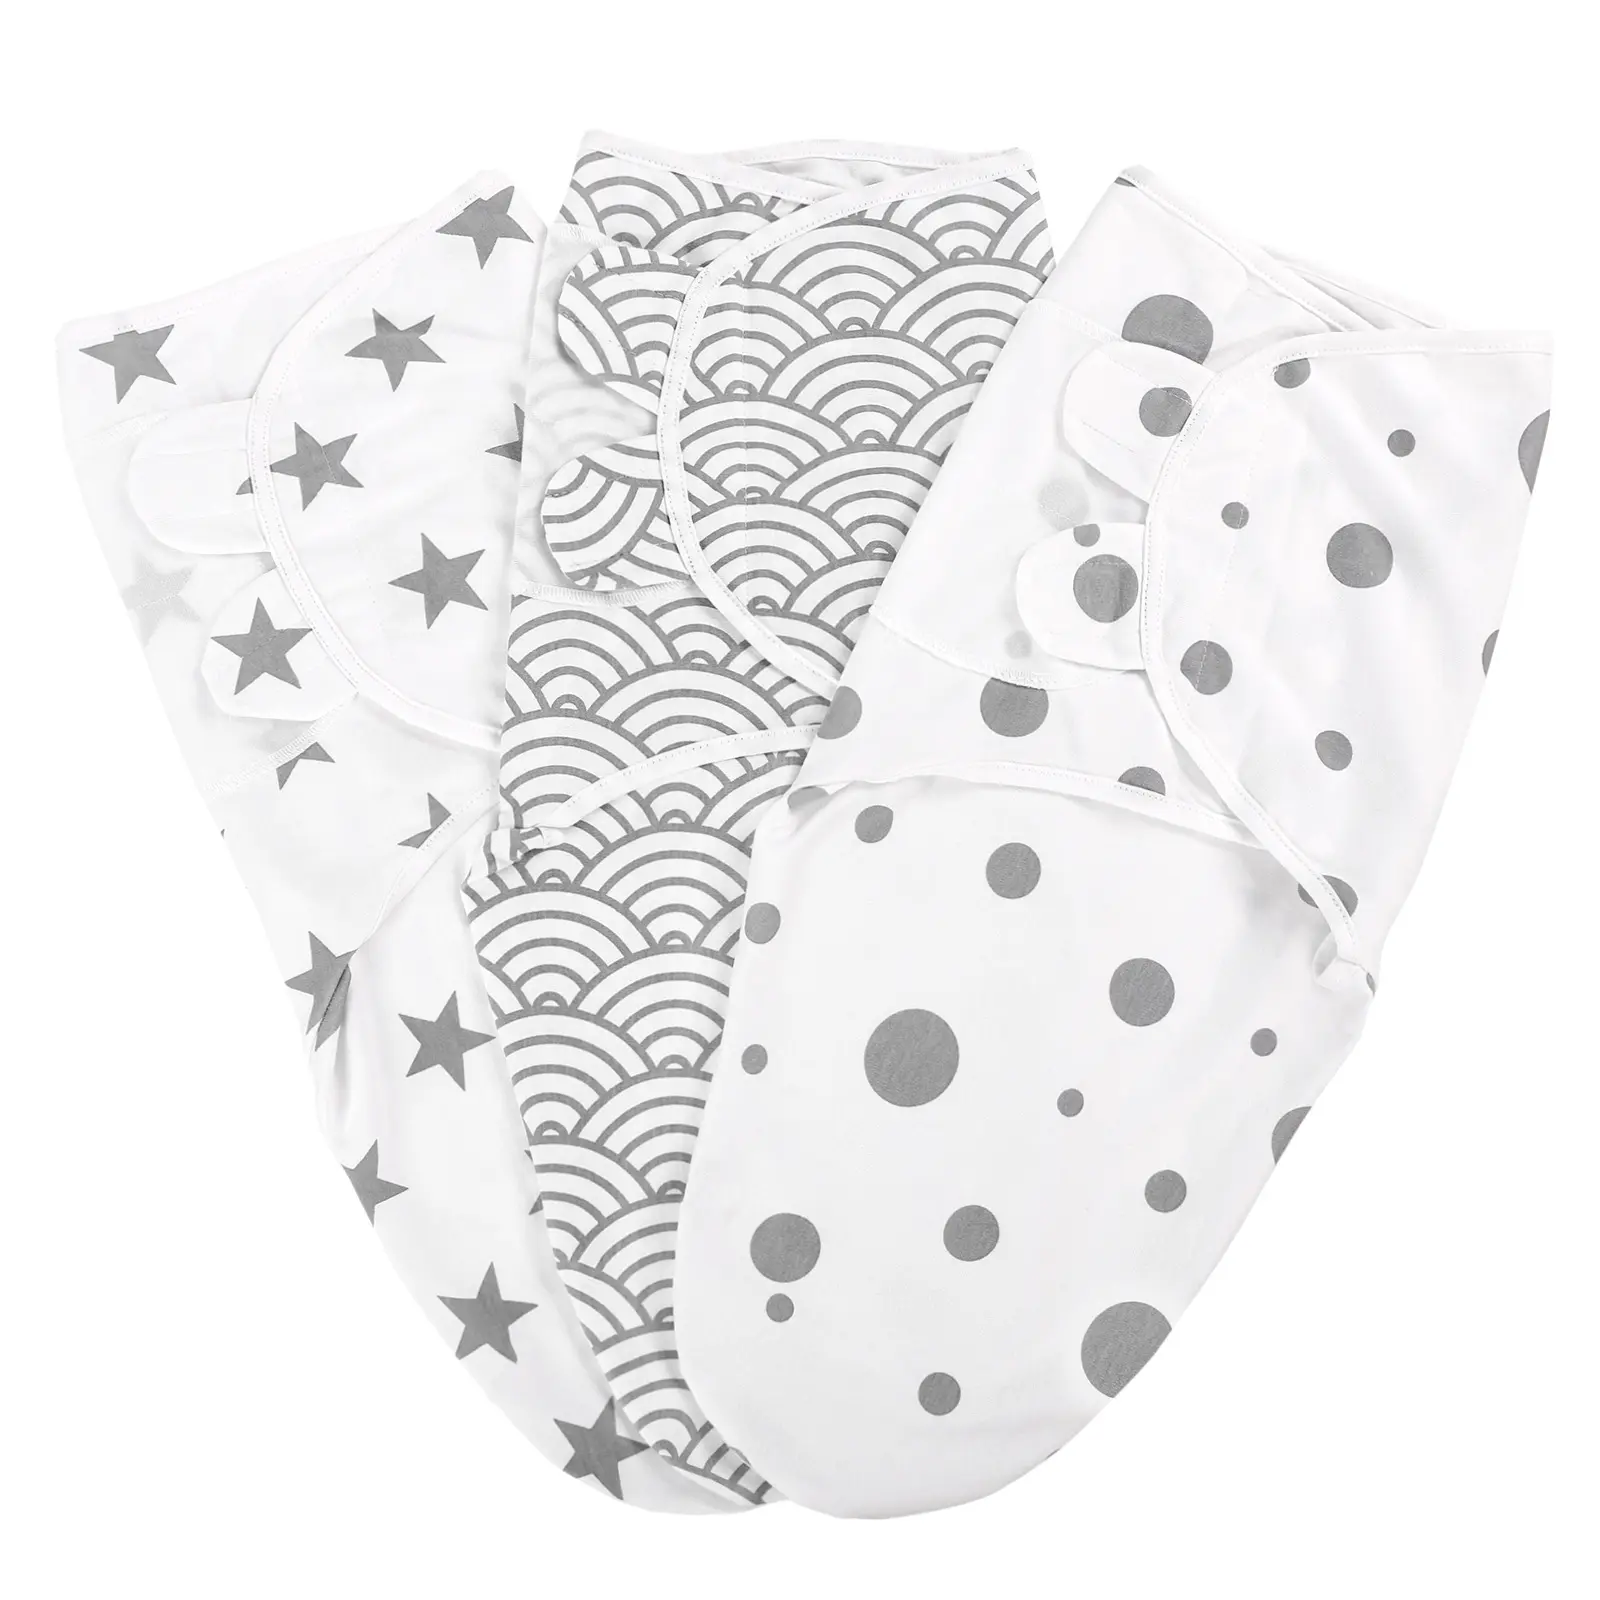 Customize 100% Cotton Unisex Sleepsack Baby Swaddle Blanket For Newborn Adjustable Infant Baby Swaddle Wrap